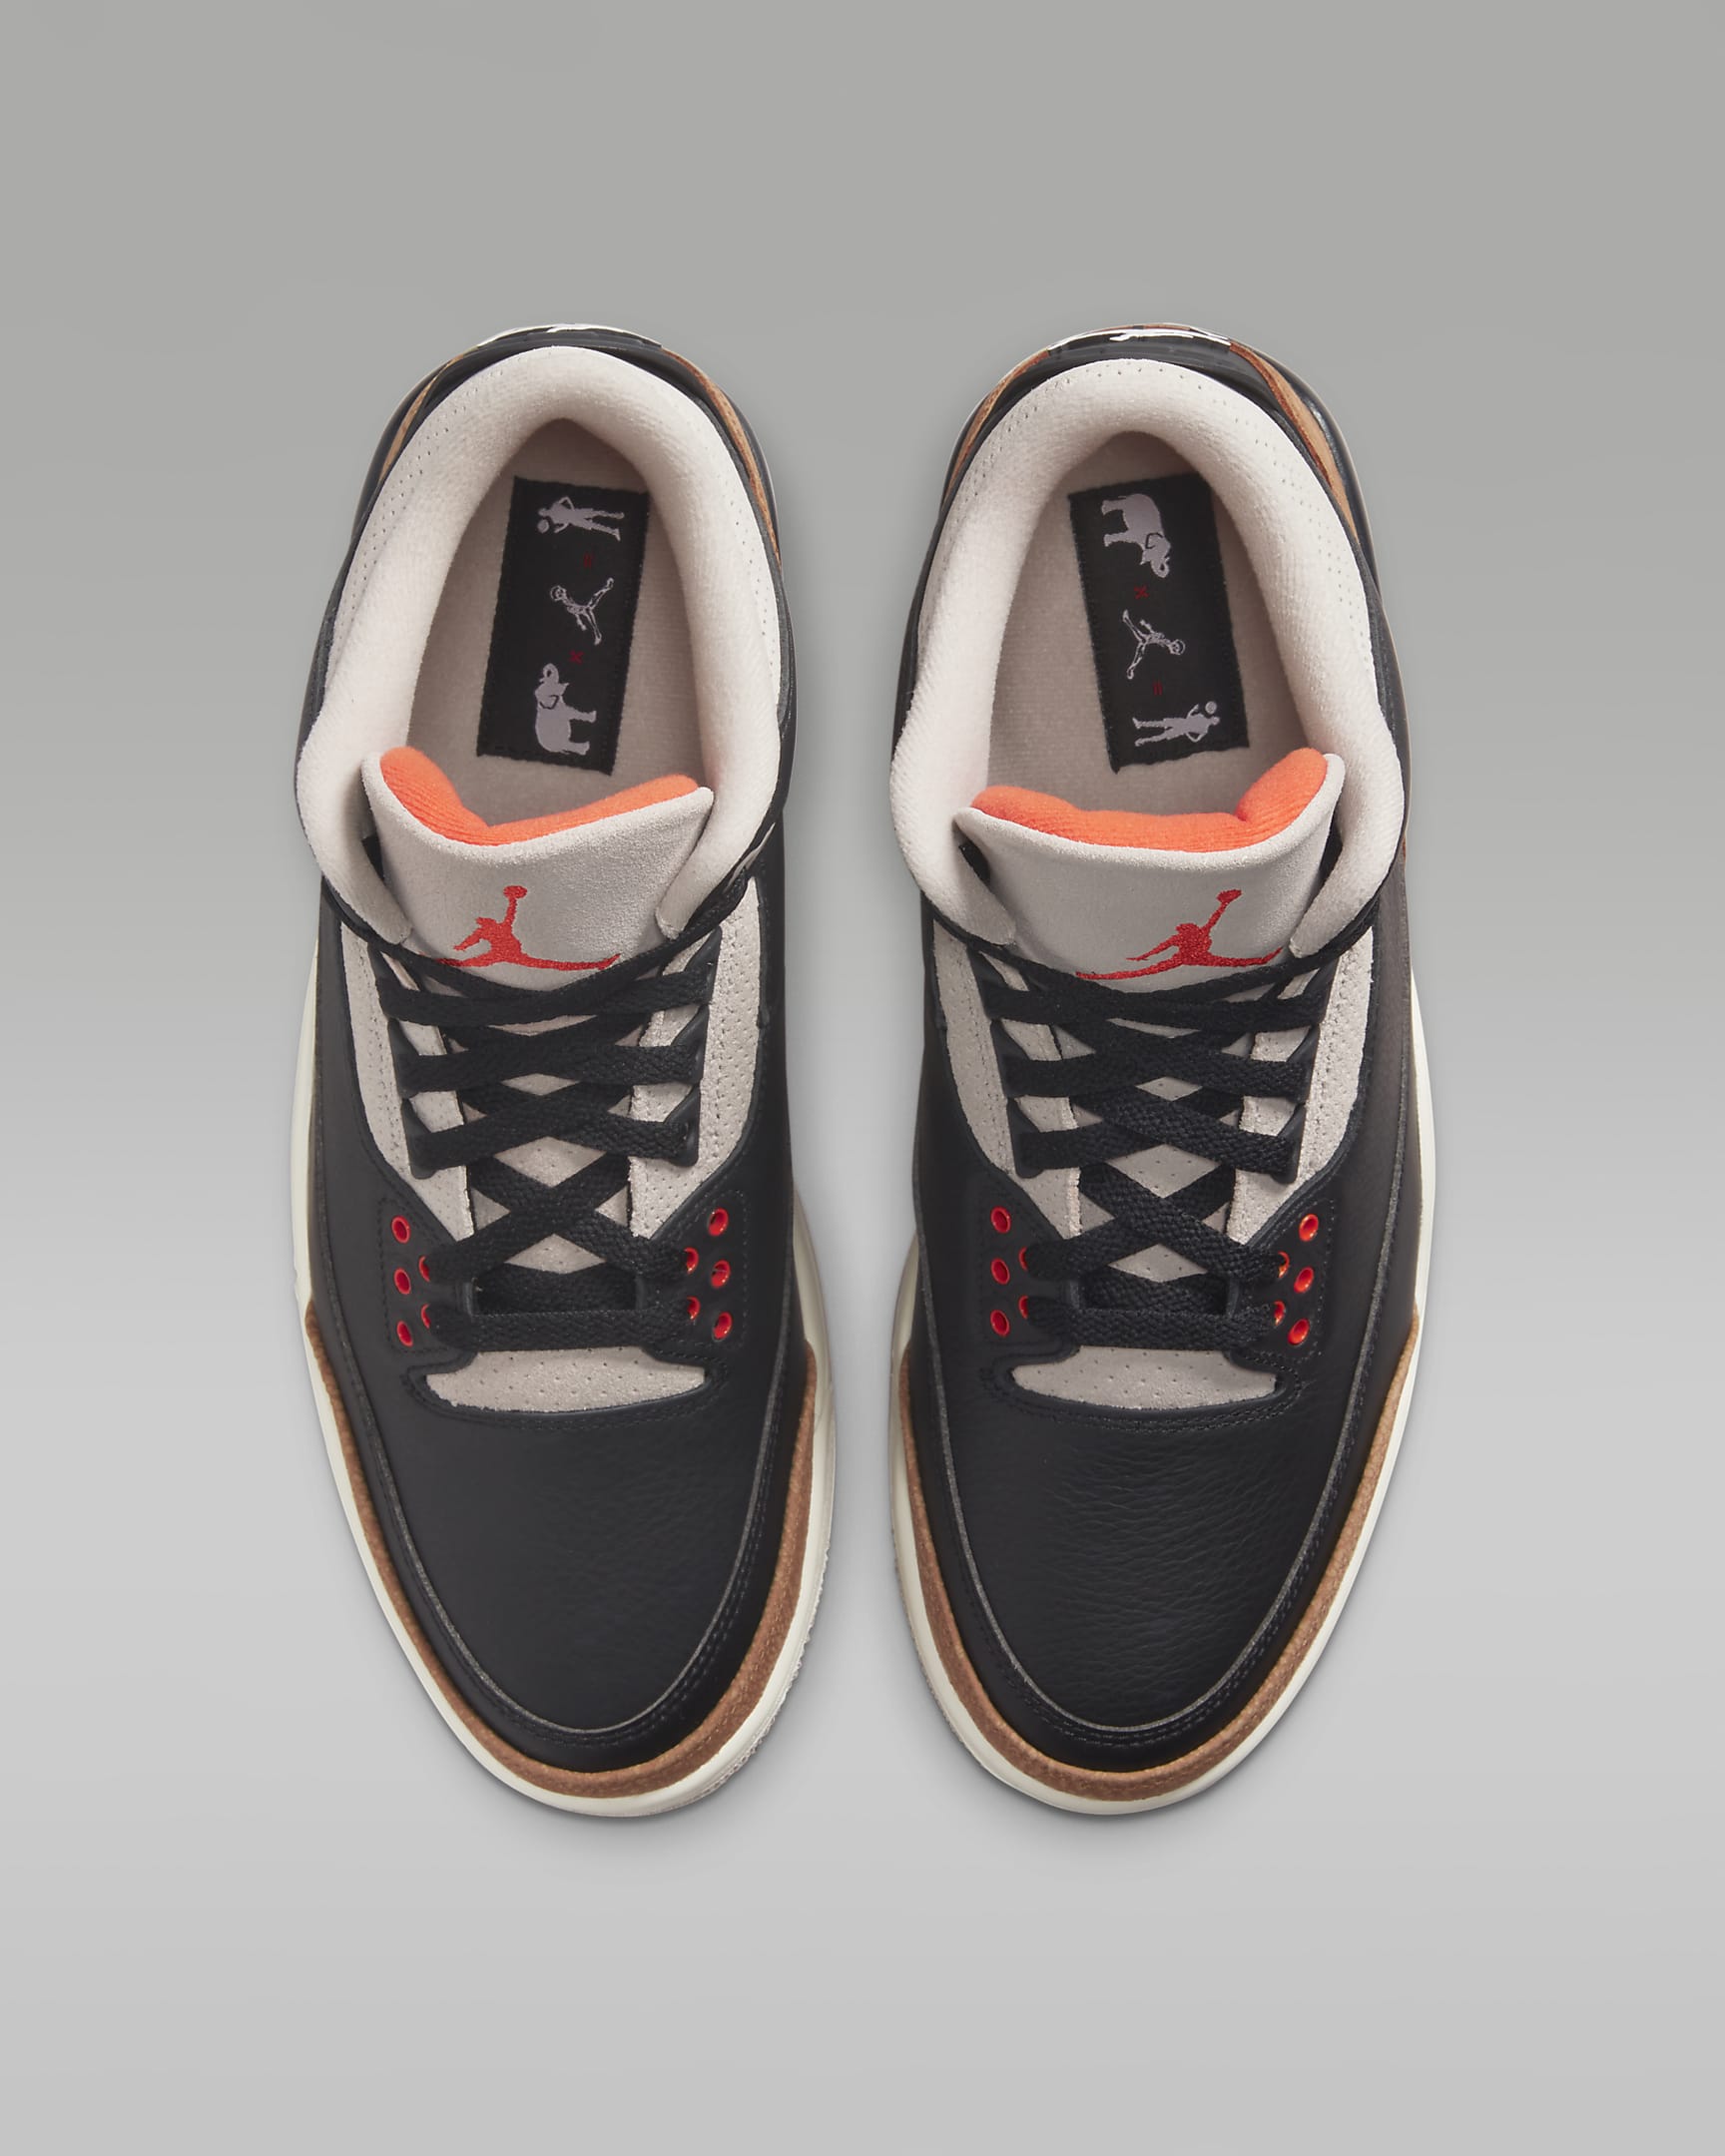 Air Jordan 3 Retro Men's Shoes - Black/Fossil Stone/Sail/Rush Orange